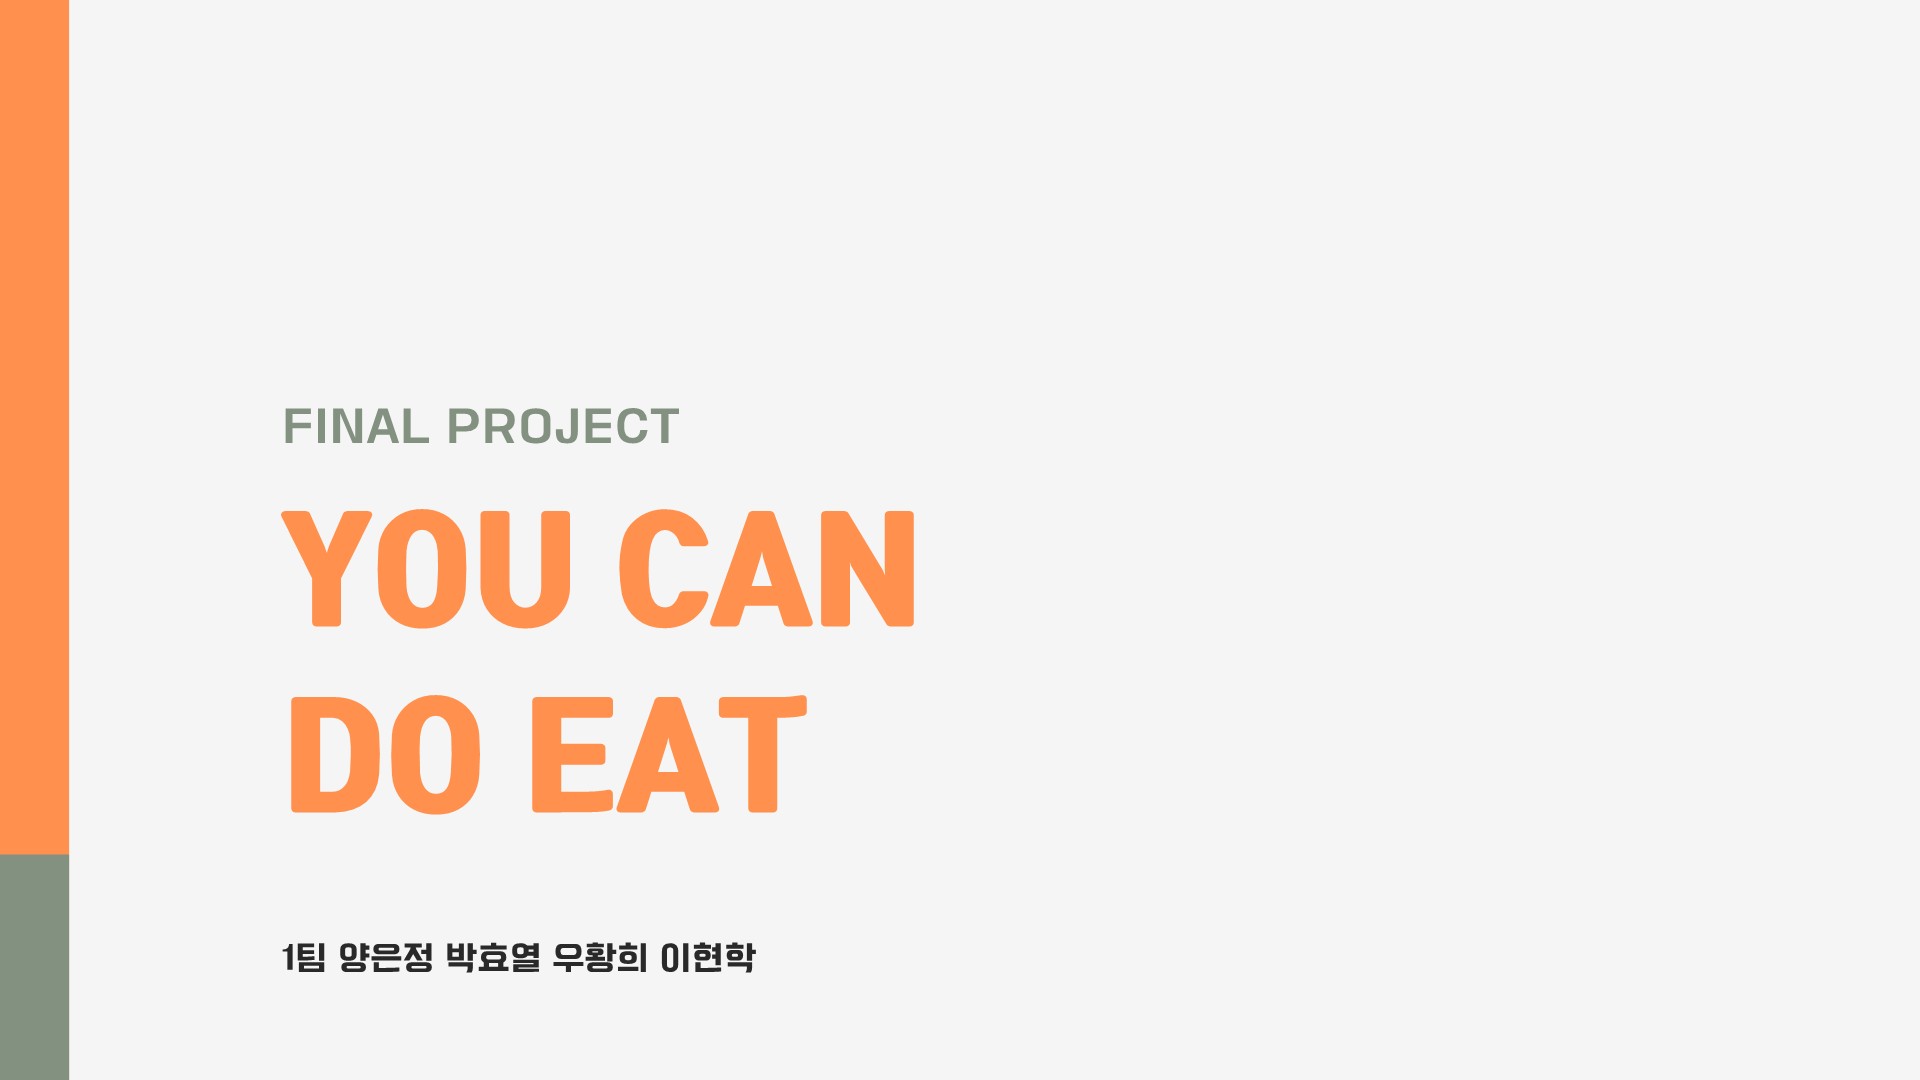 유캔두잇 (YOU CAN DO EAT)